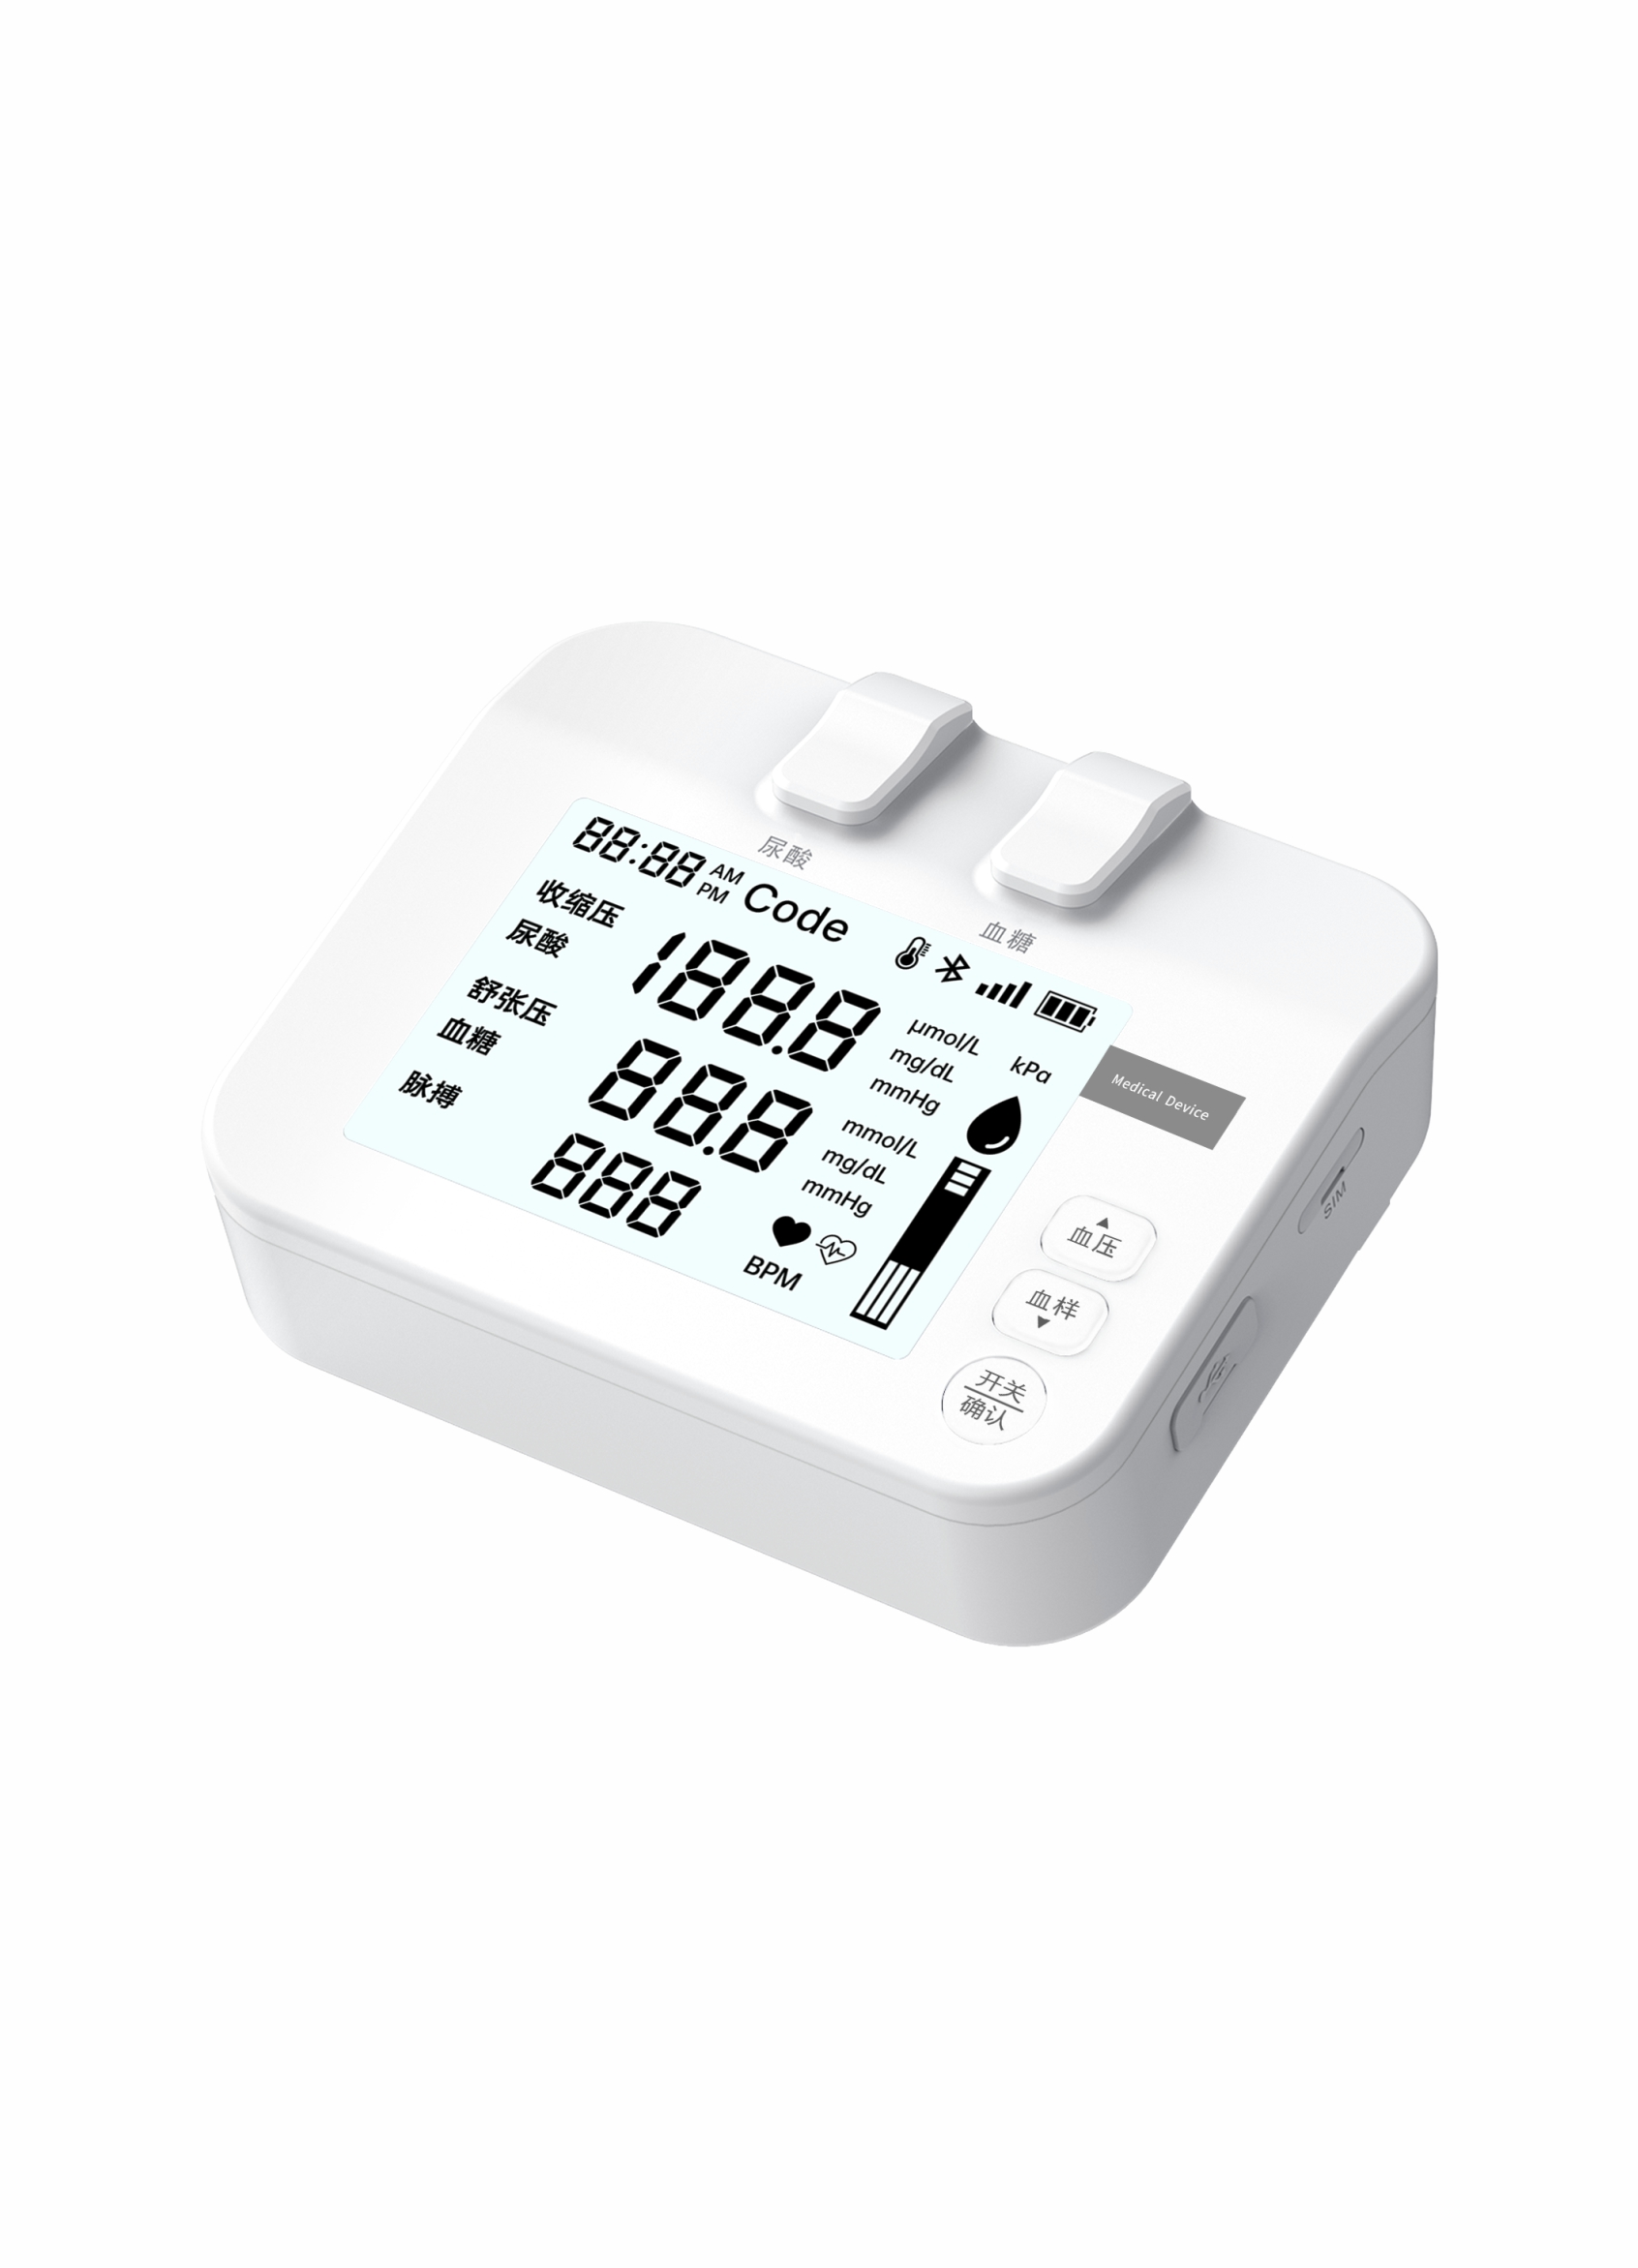 PUG-1血糖尿酸血压测试仪